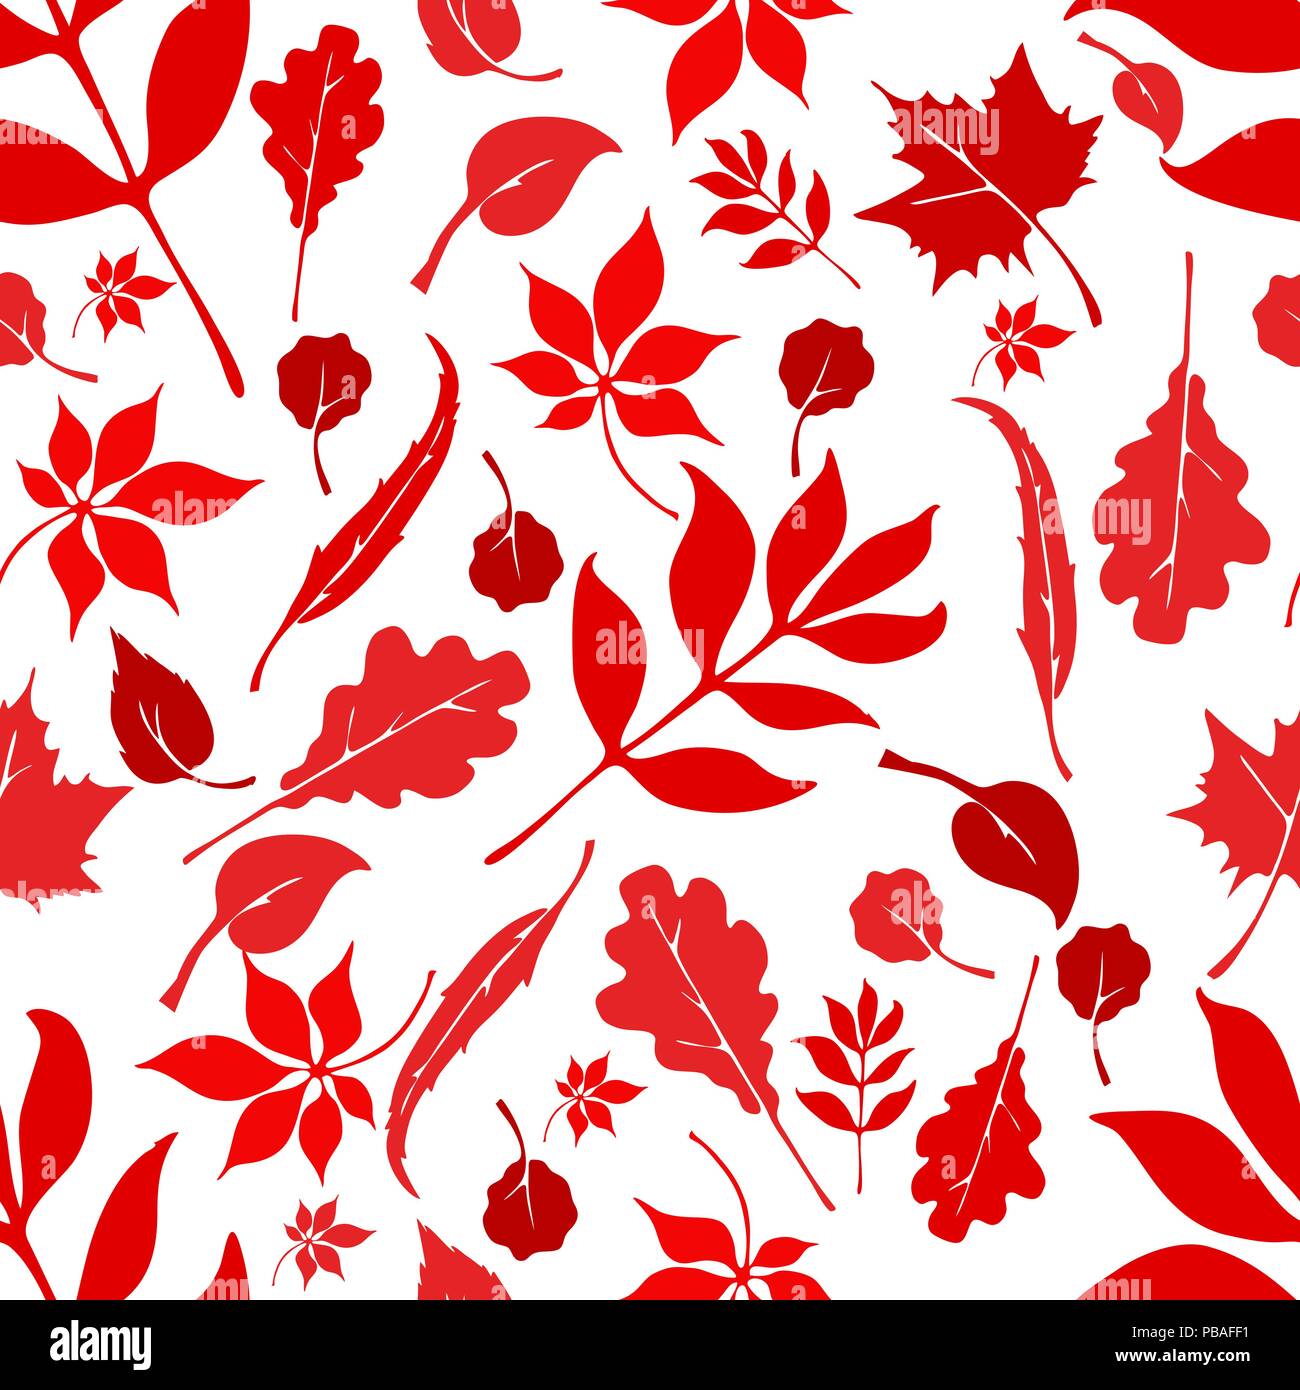 La forêt russe modèle homogène. Tissu rouge et blanc. Les arbres européens du design. Chêne, tilleul, hêtre, châtaignier, saule, aulne, frêne, érable. Vector Illustration de Vecteur